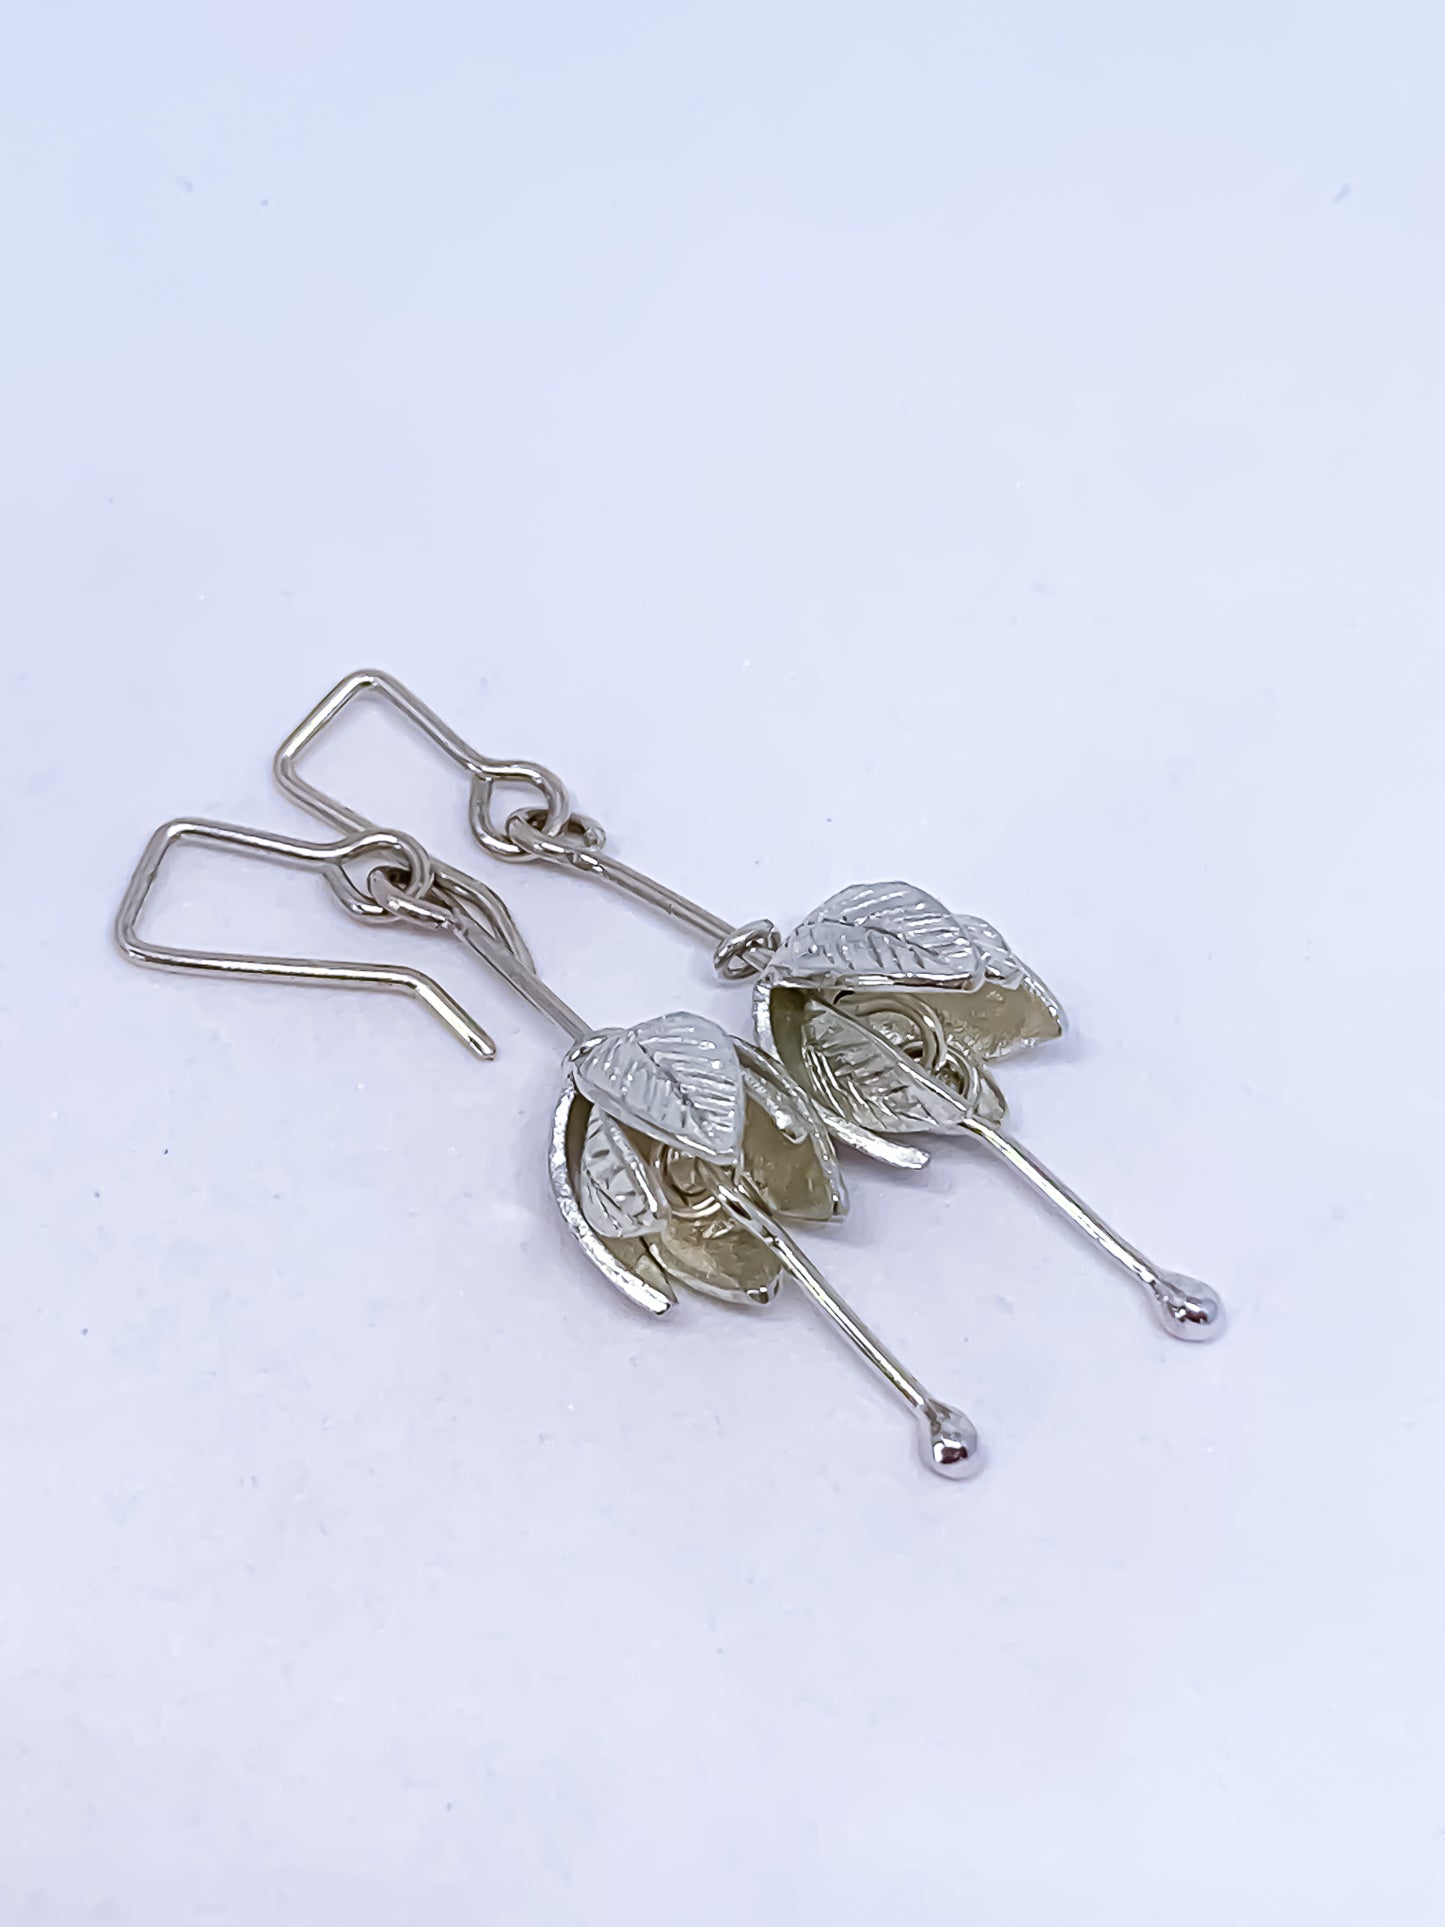 Stylised Fuchsia Flower Pendant Earrings in Sterling Silver